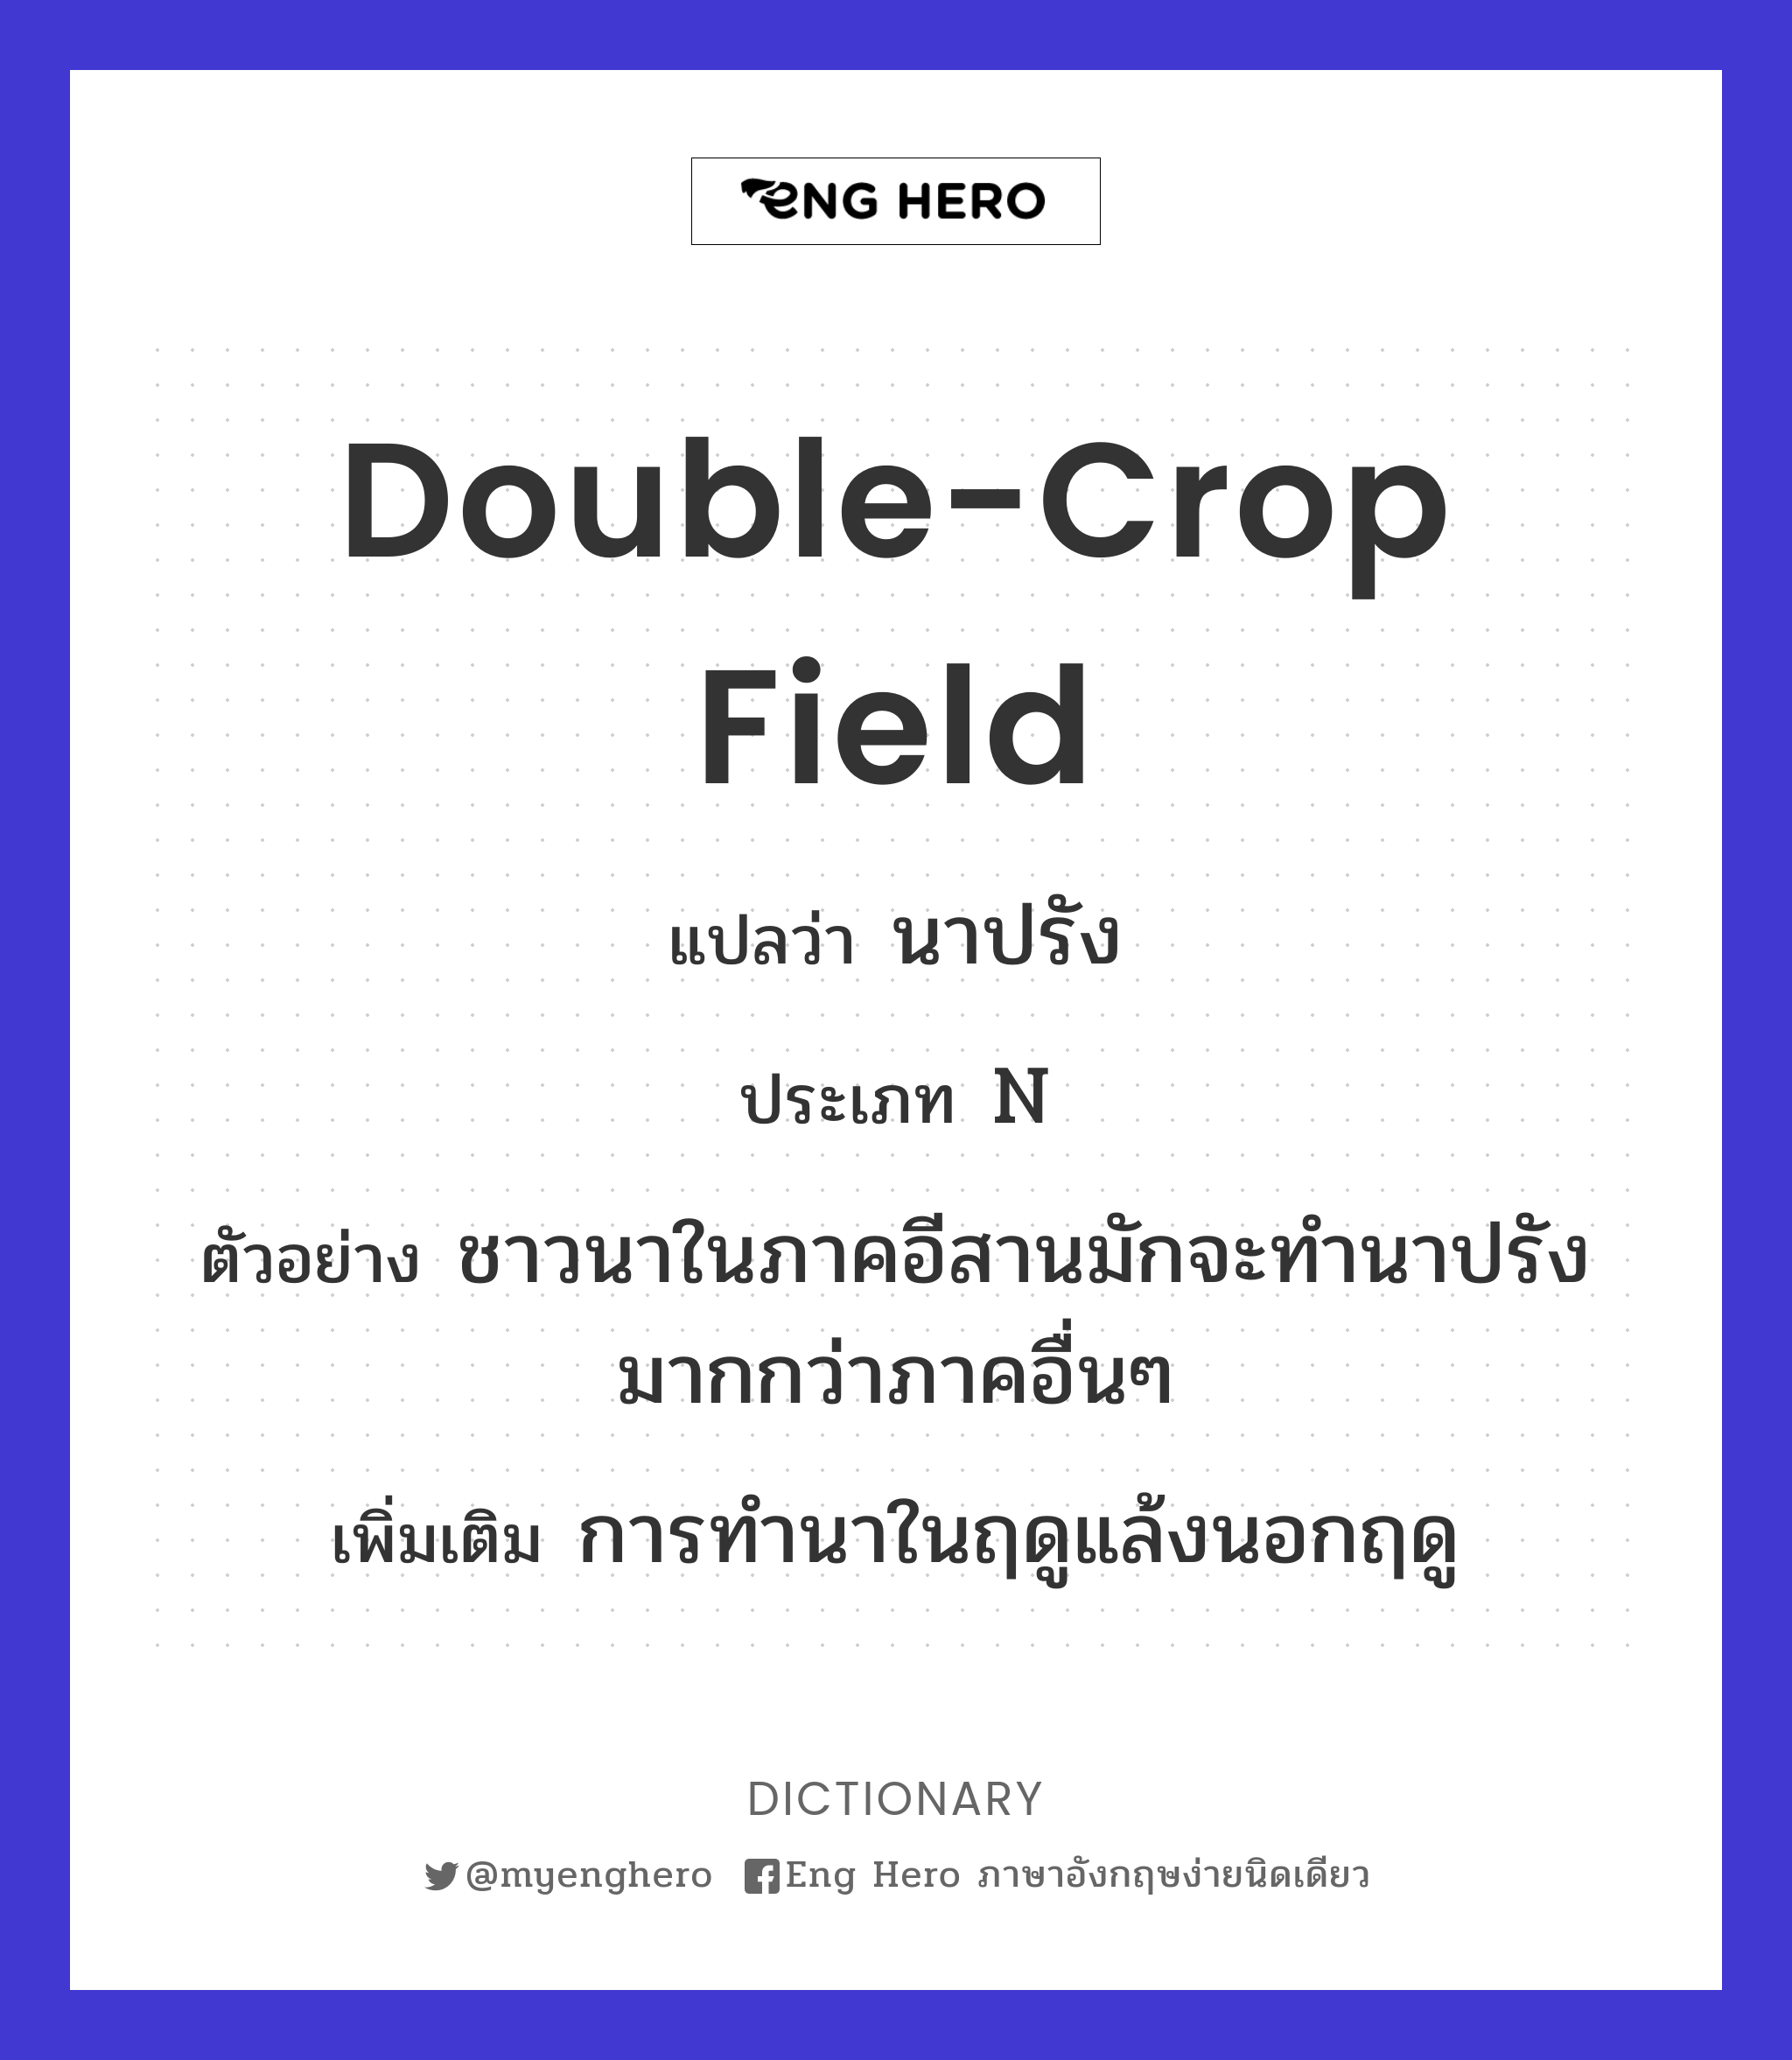 double-crop field